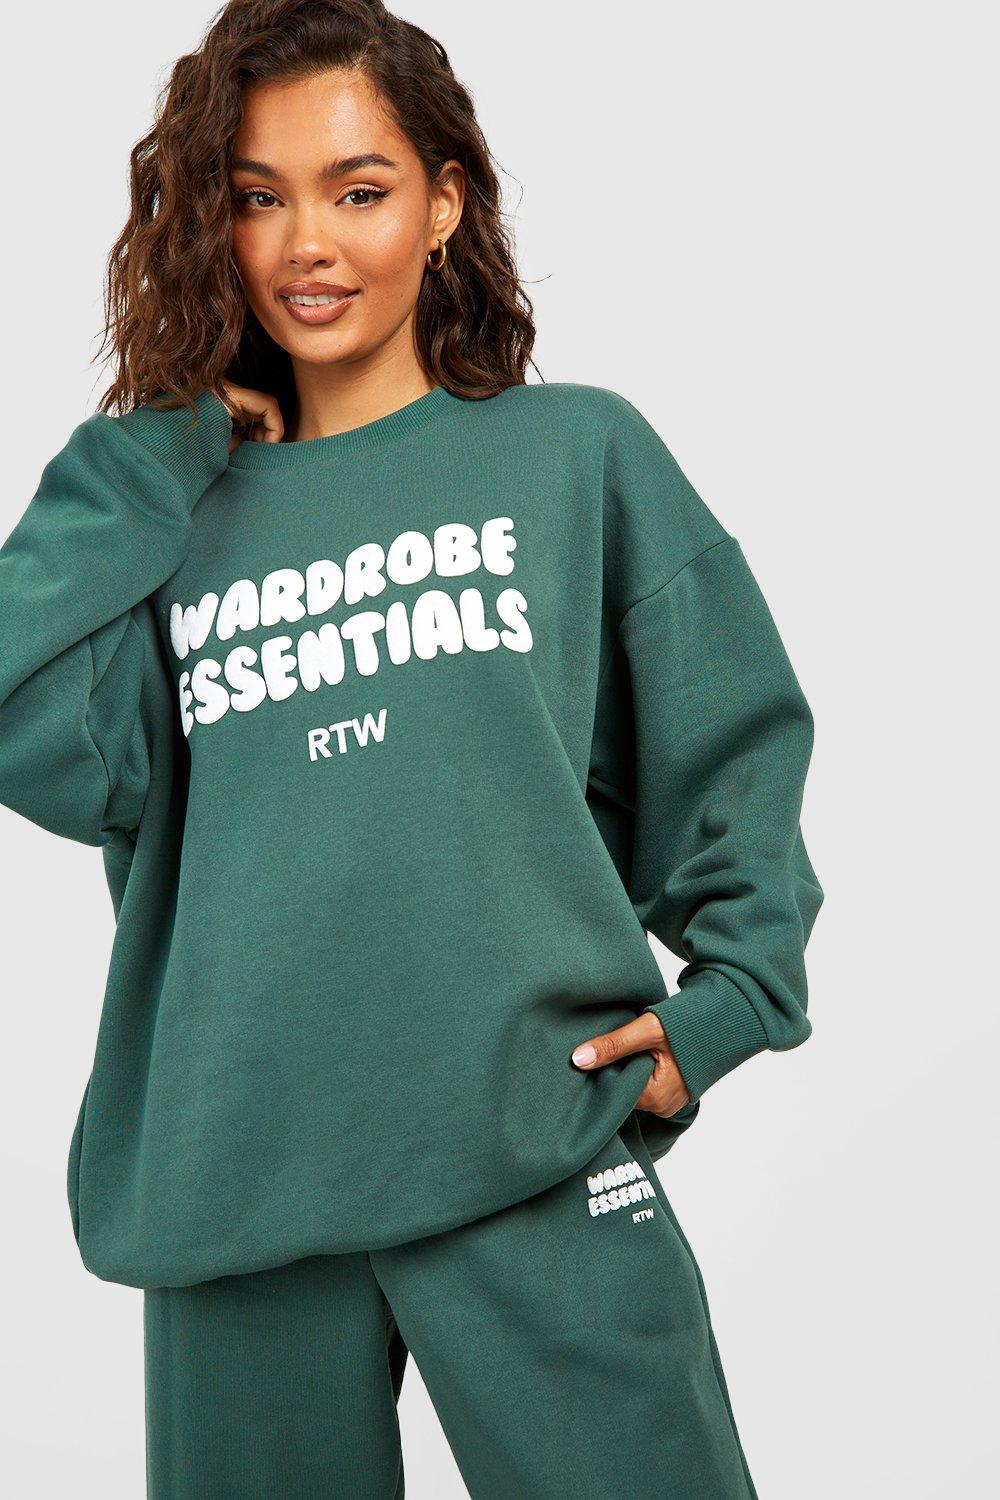 Wardrobe Essentials Slogan Sweatshirt Tracksuit